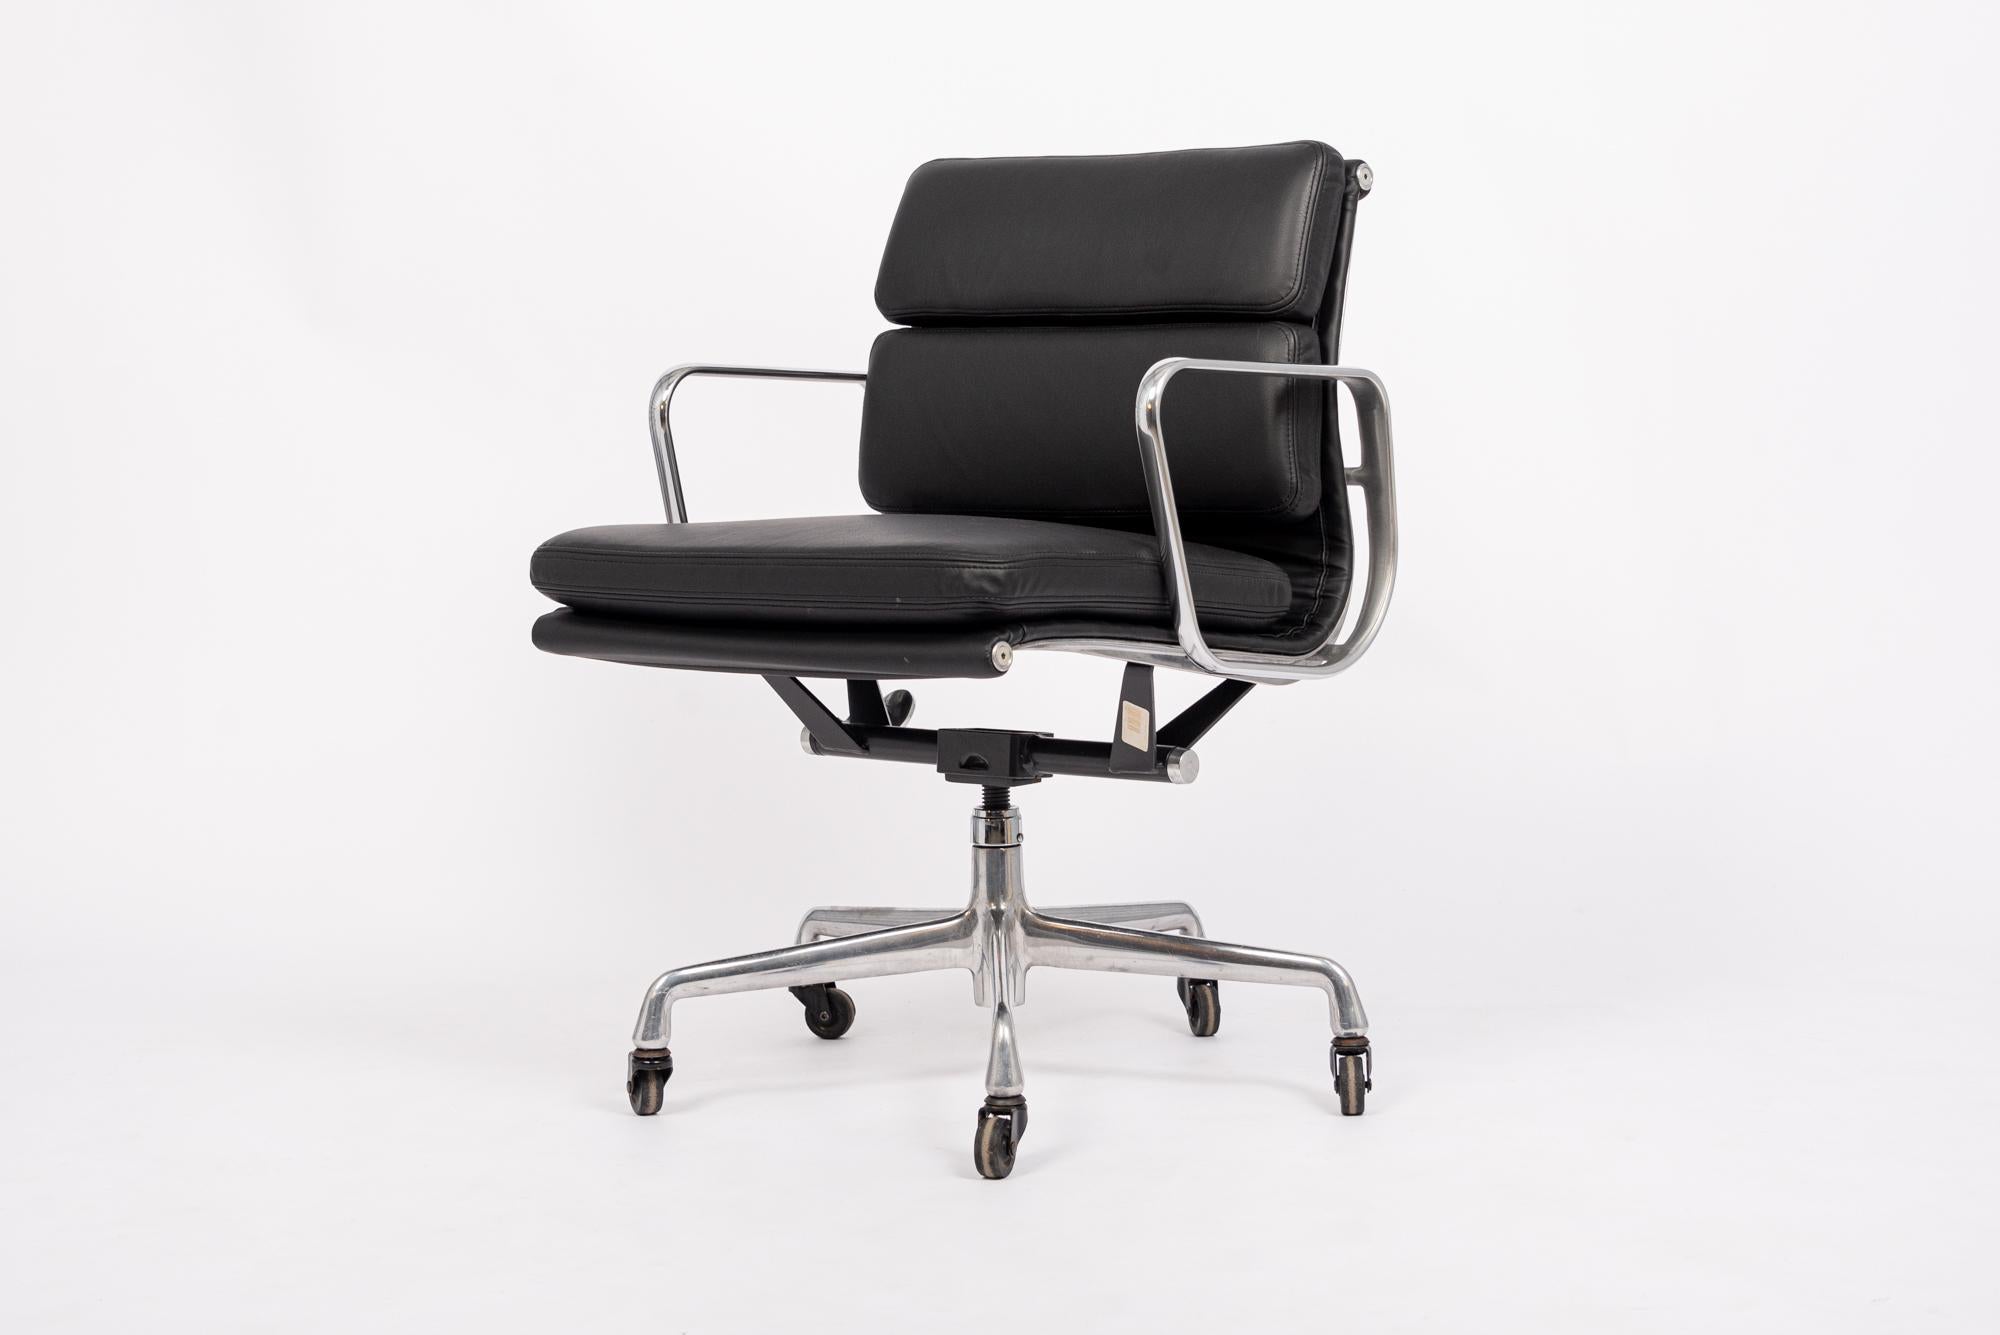 Dieser authentische Eames for Herman Miller Soft Pad Management Height Bürostuhl aus schwarzem Leder der Aluminum Group Collection wurde in den 2000er Jahren hergestellt. Dieser klassische, moderne Bürostuhl aus der Mitte des Jahrhunderts wurde 1969